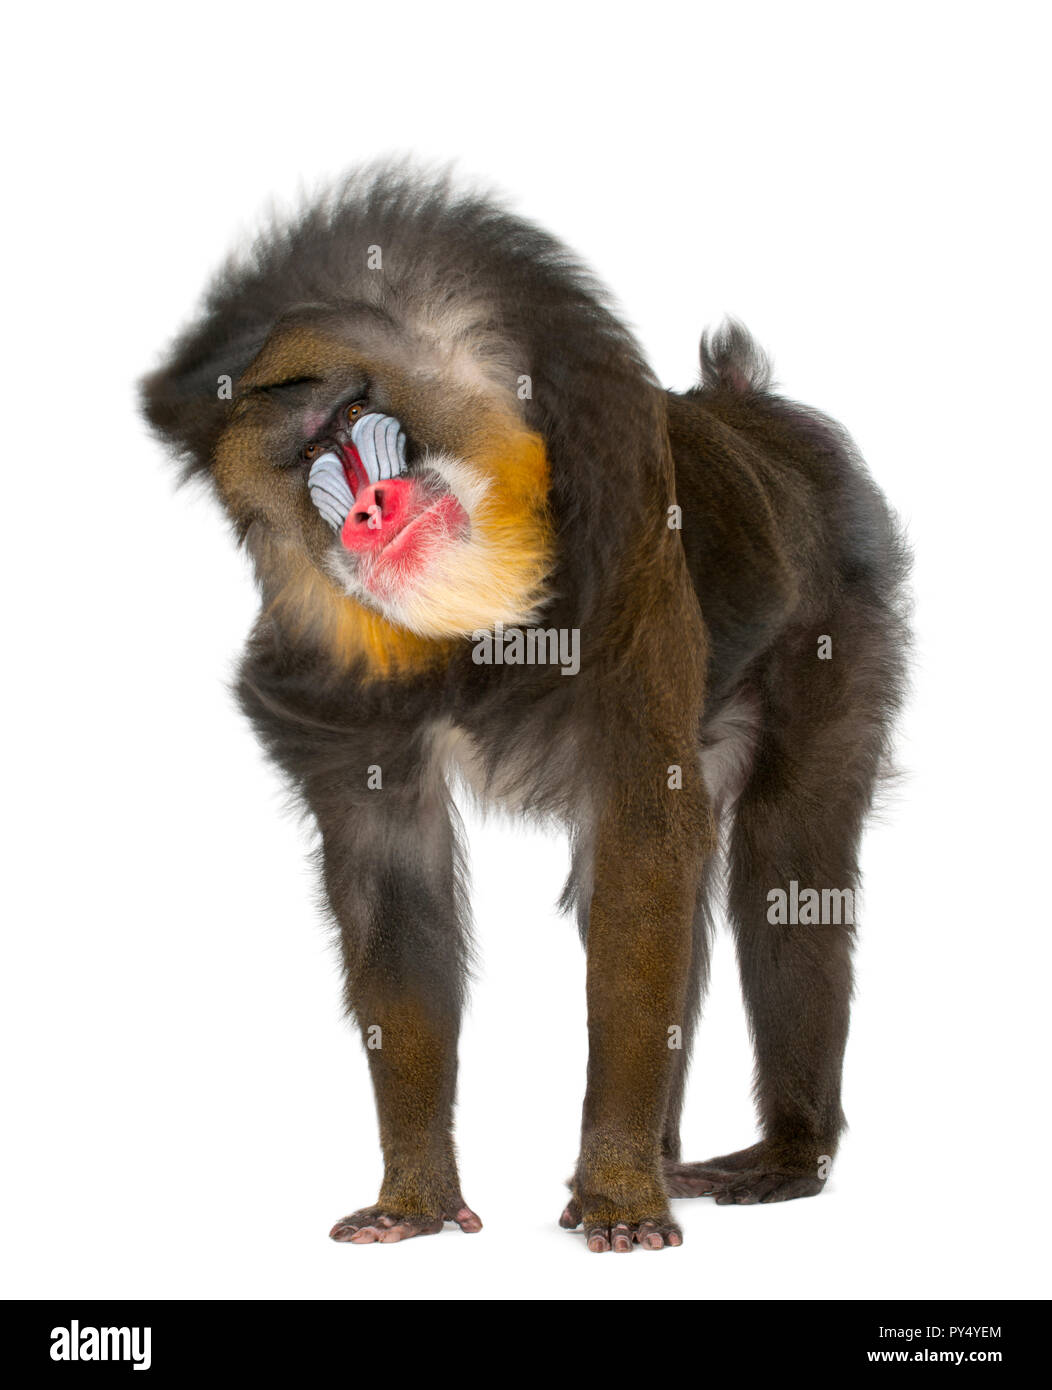 Mandrill scuotimento- Mandrillus Sphinx, 22 anni, primate della scimmia del Vecchio Mondo famiglia contro uno sfondo bianco Foto Stock